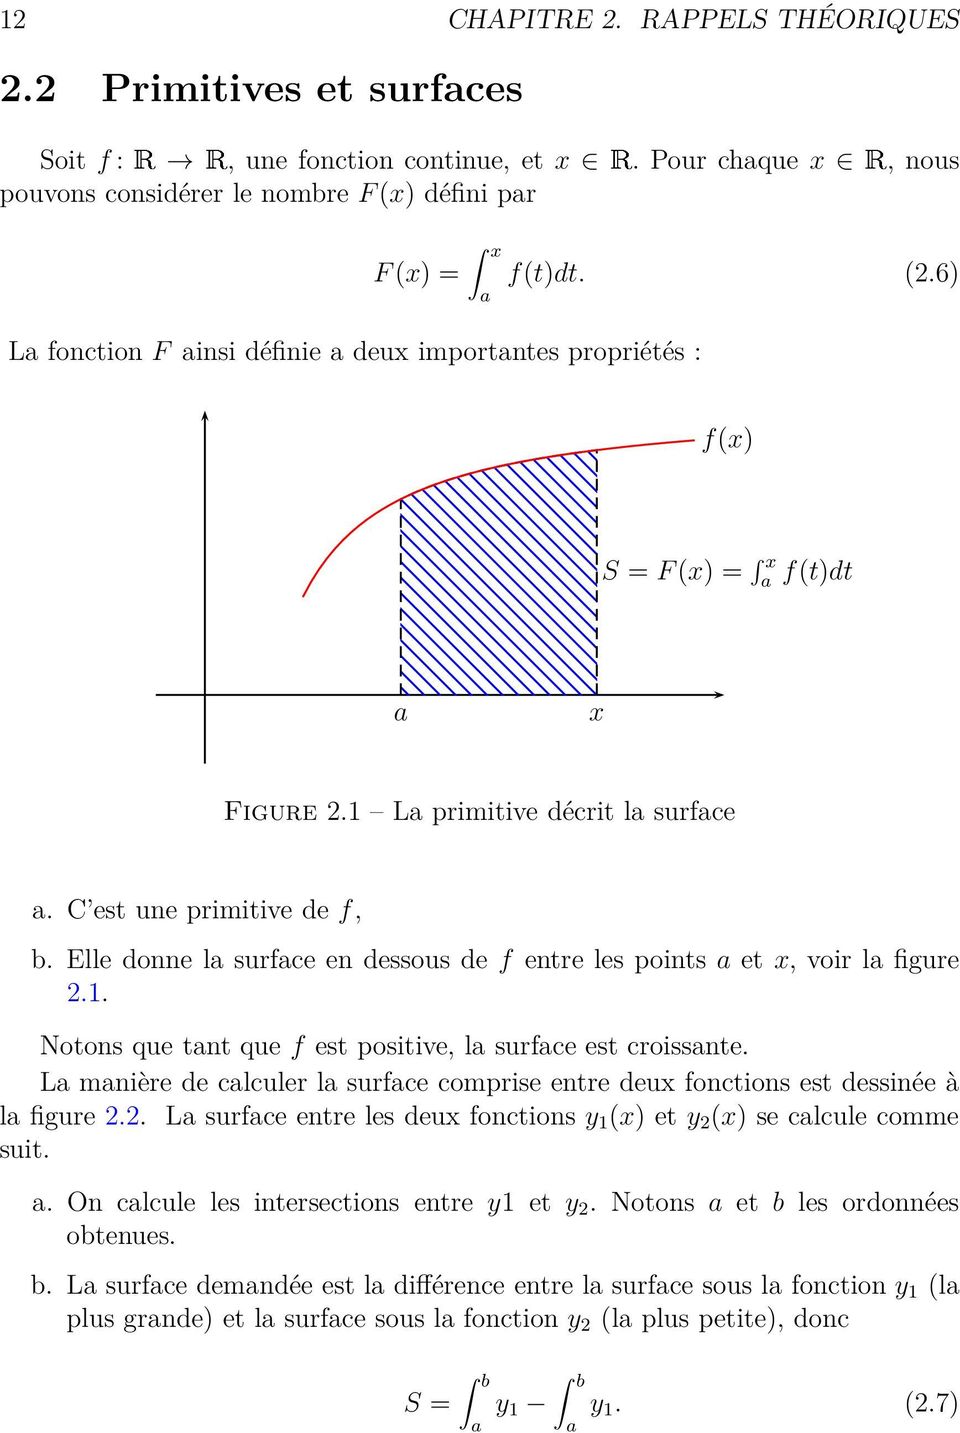 La primitive décrit la surface a. C est une primitive de f, b. Elle donne la surface en dessous de f entre les points a et x, voir la figure 2.